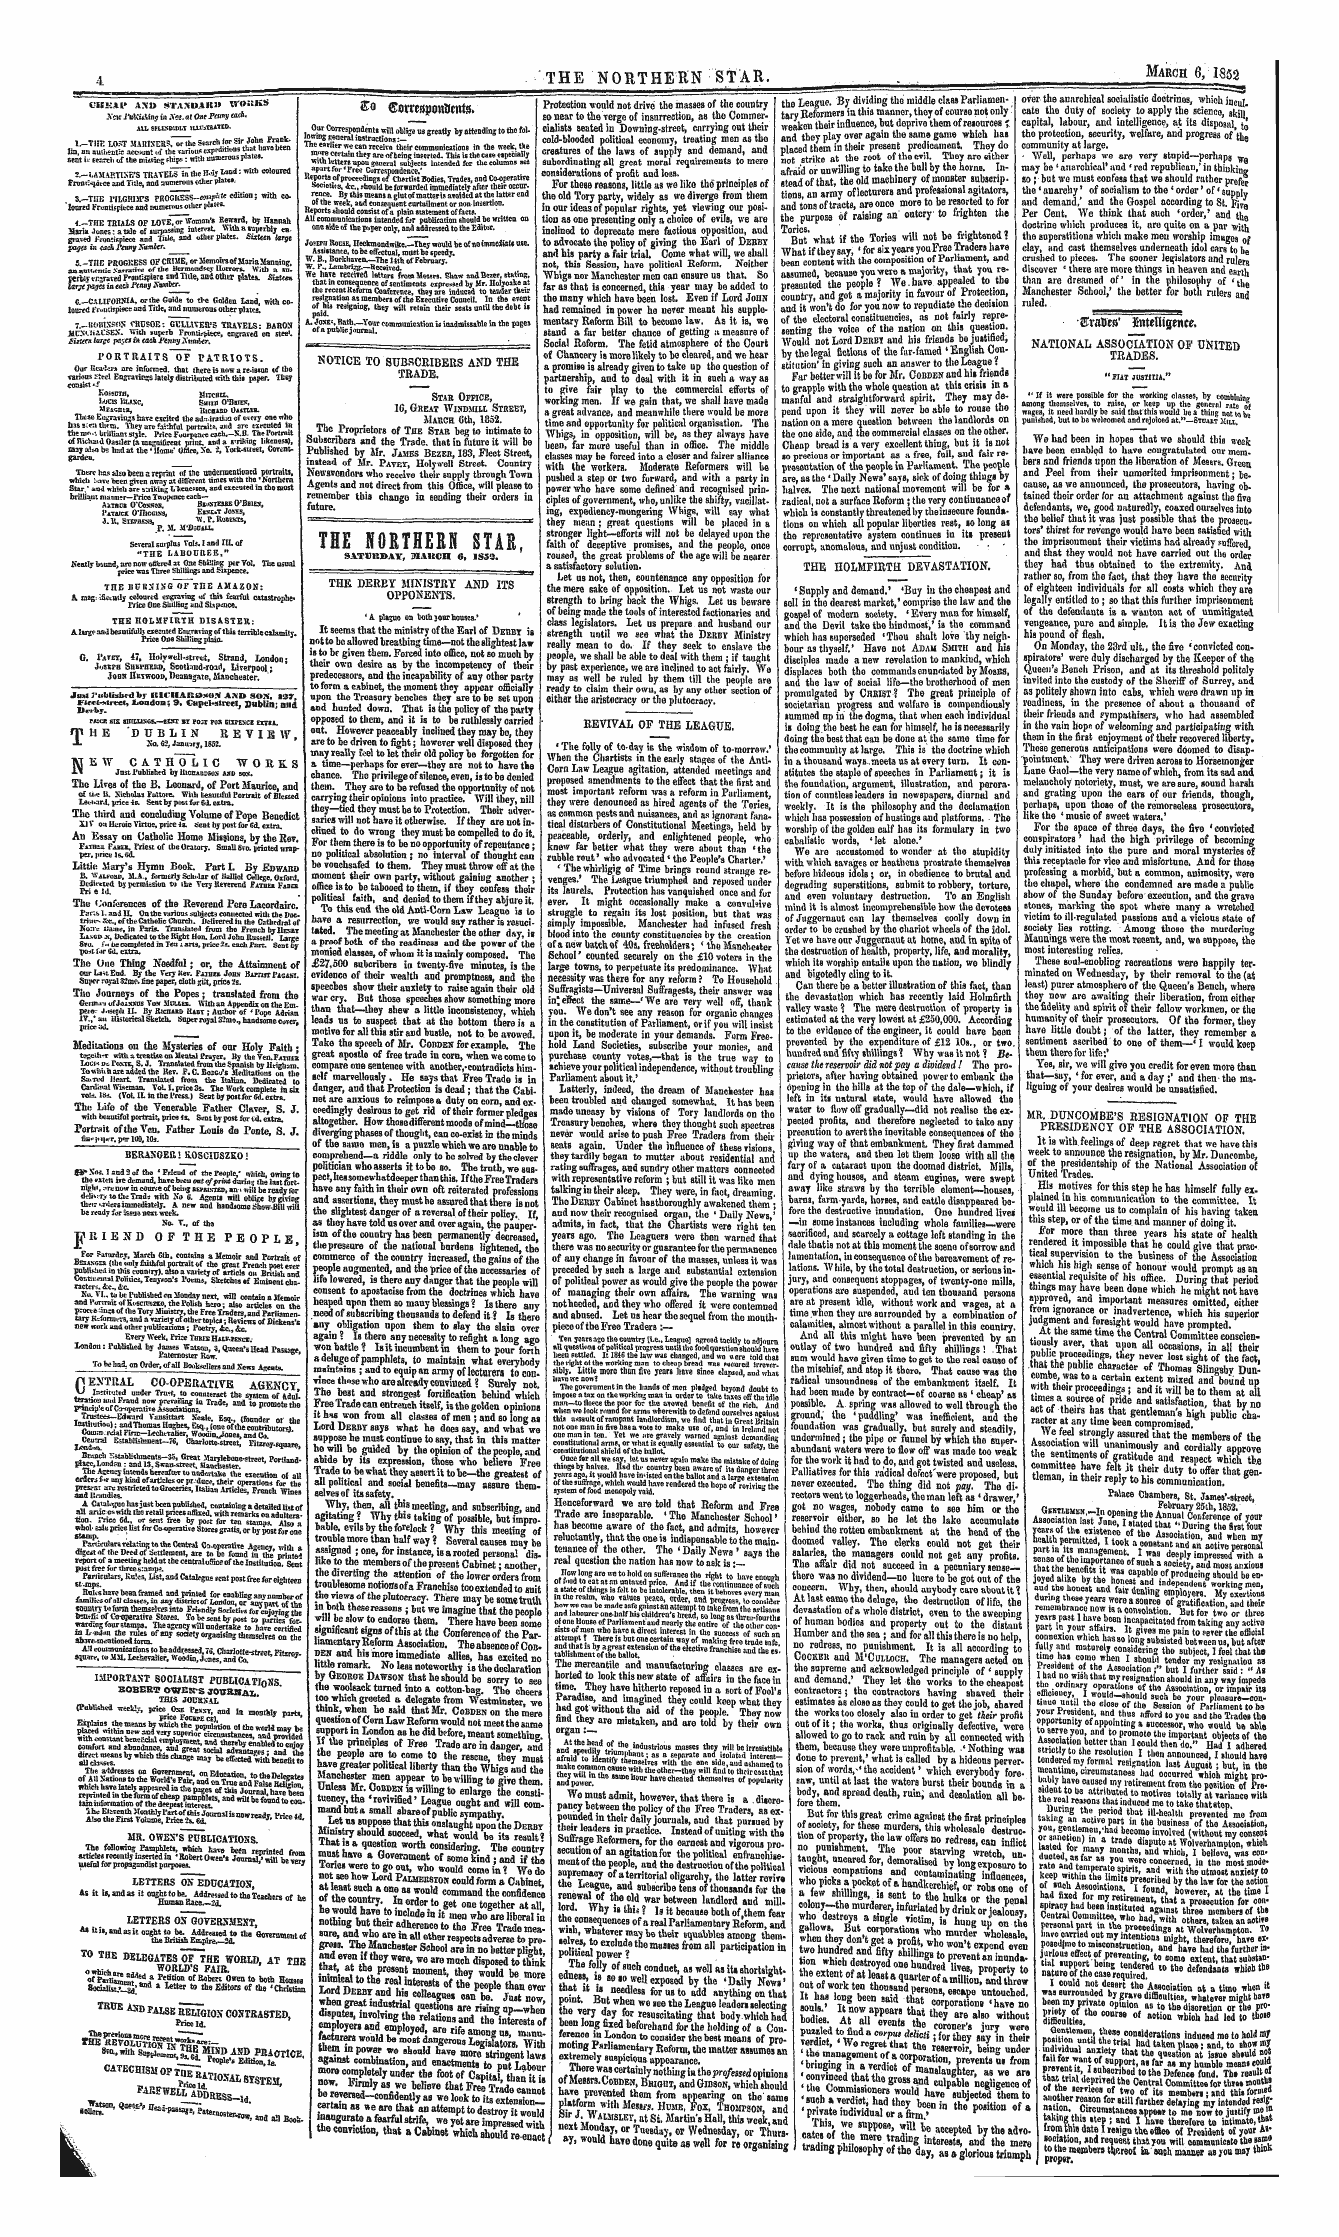 Northern Star (1837-1852): jS F Y, 1st edition - . - $Ravtft' Eutrtltgnwe*